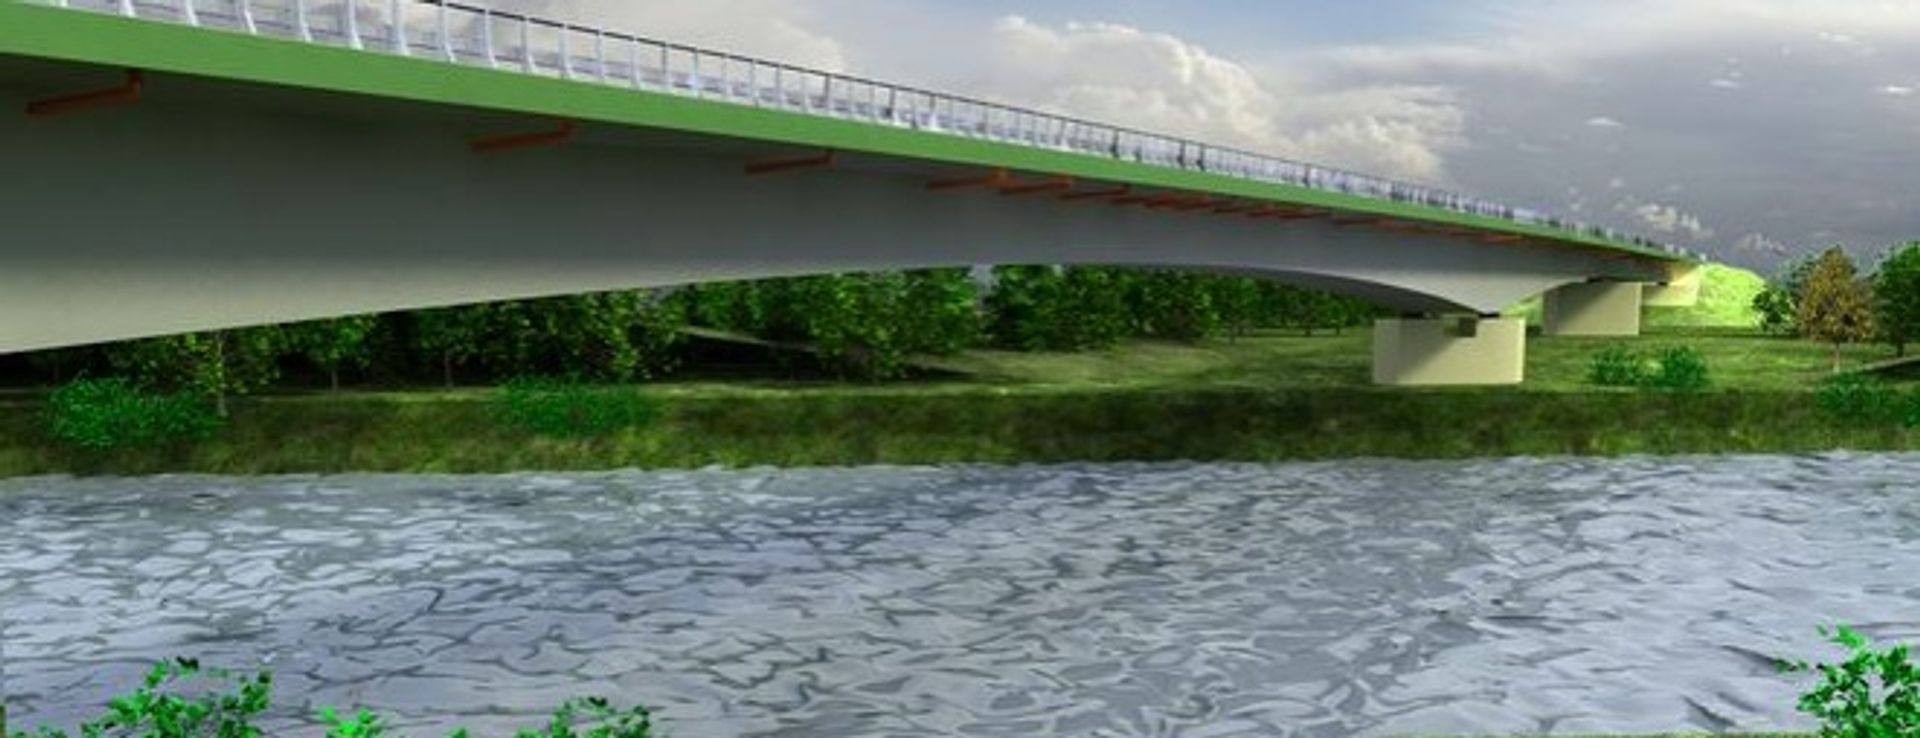  W ciągu dwóch tygodni ruszy budowa mostu przed Odrę w Brzegu Dolnym